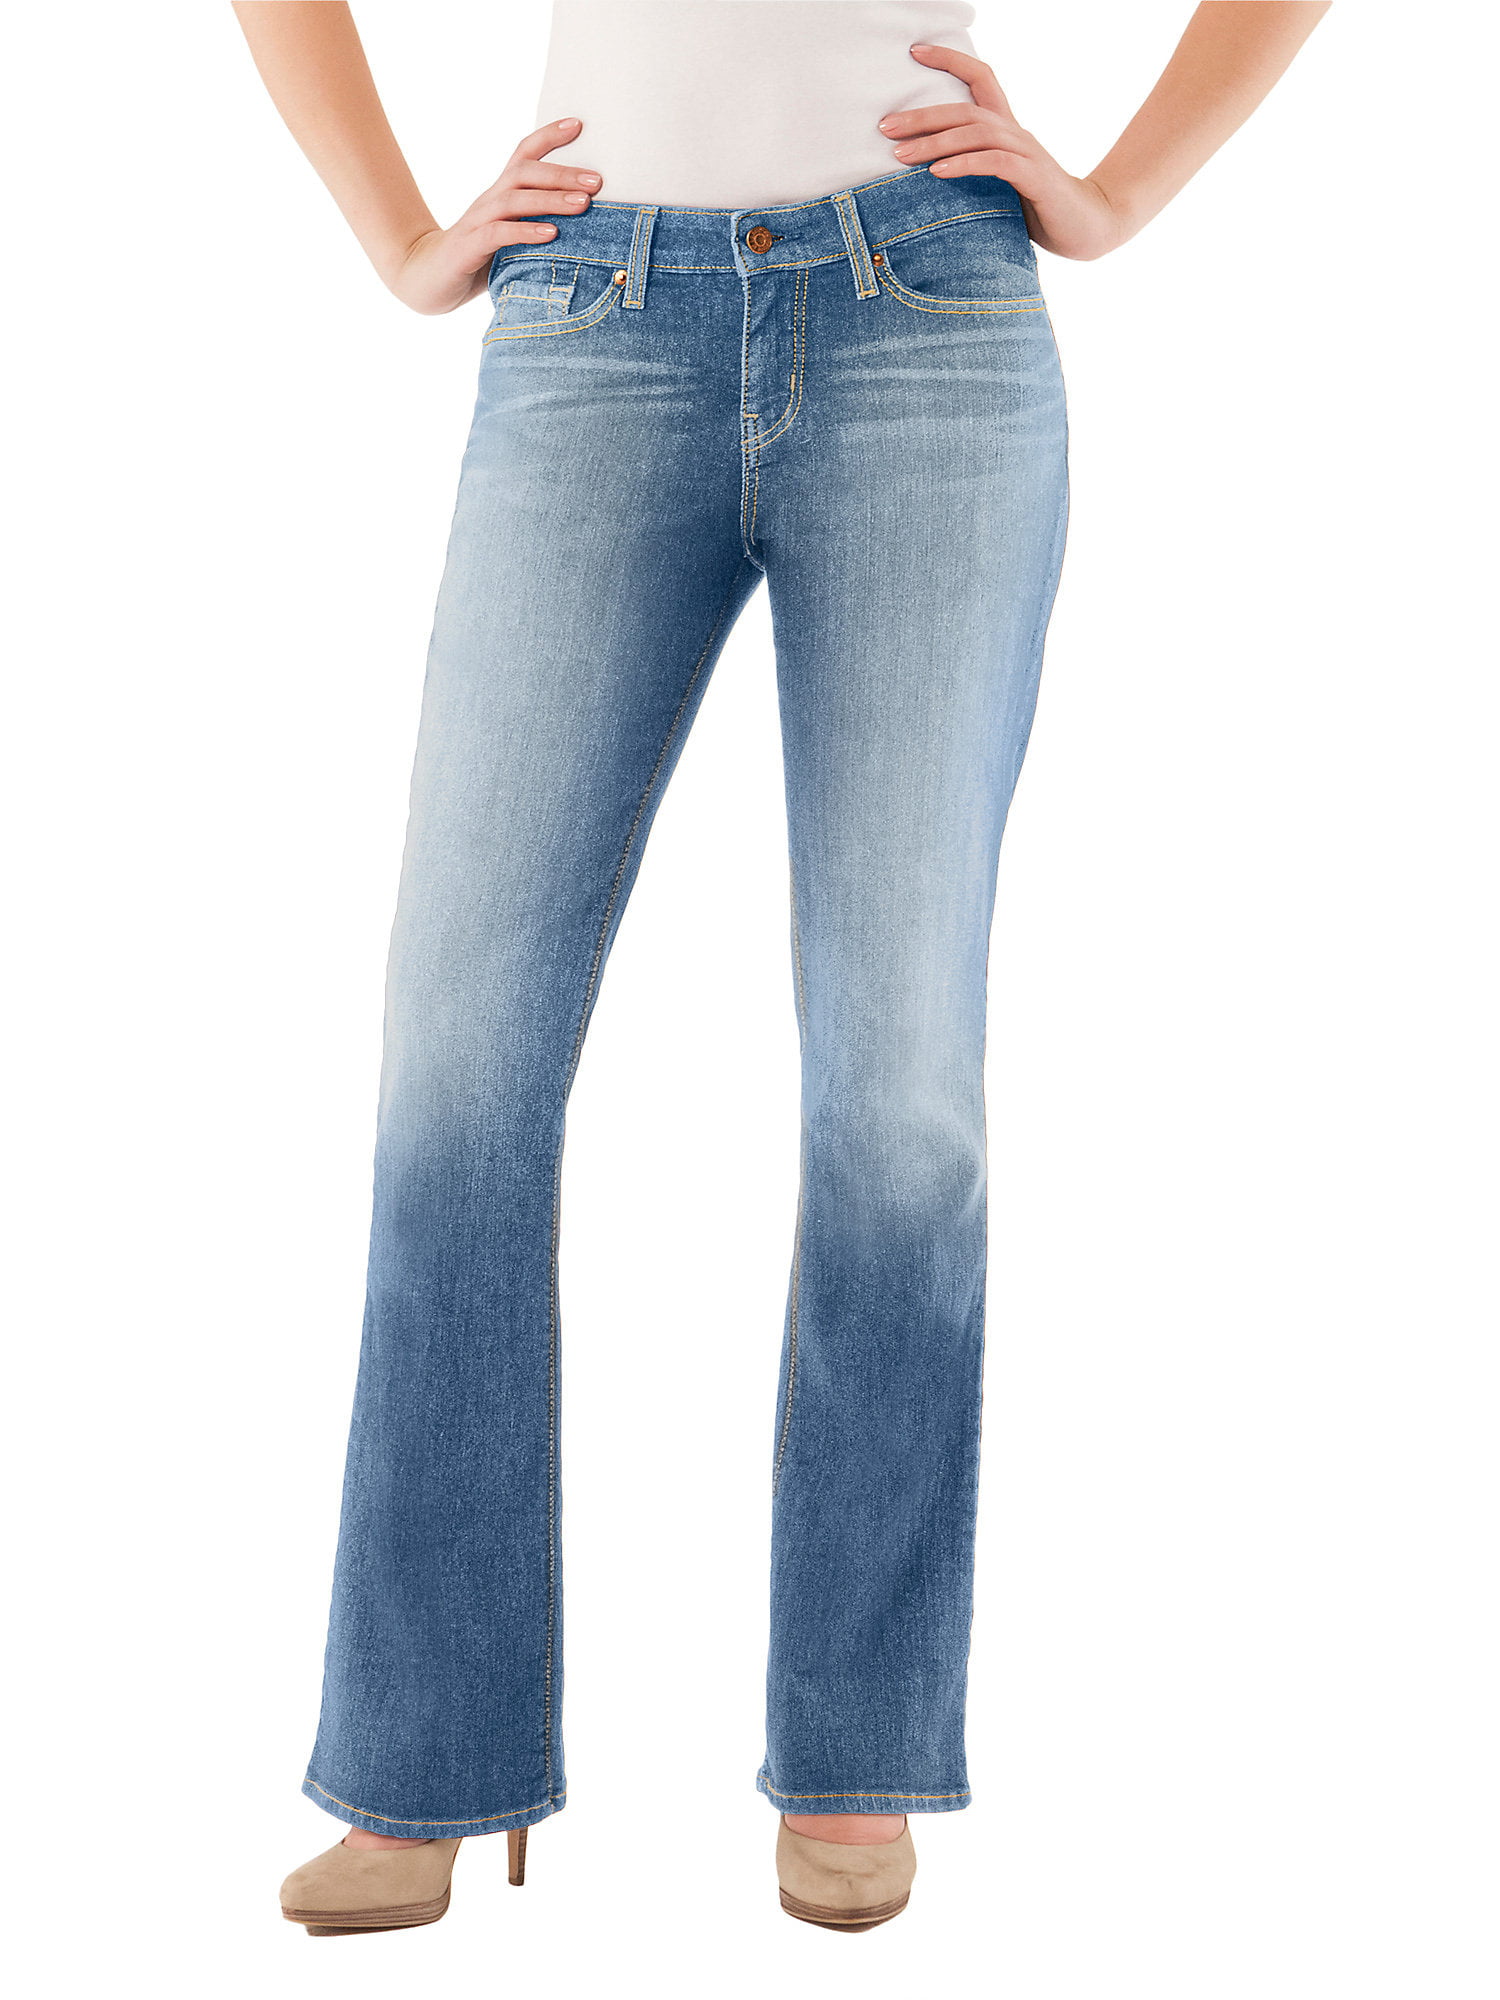 levi's stretch jeans walmart